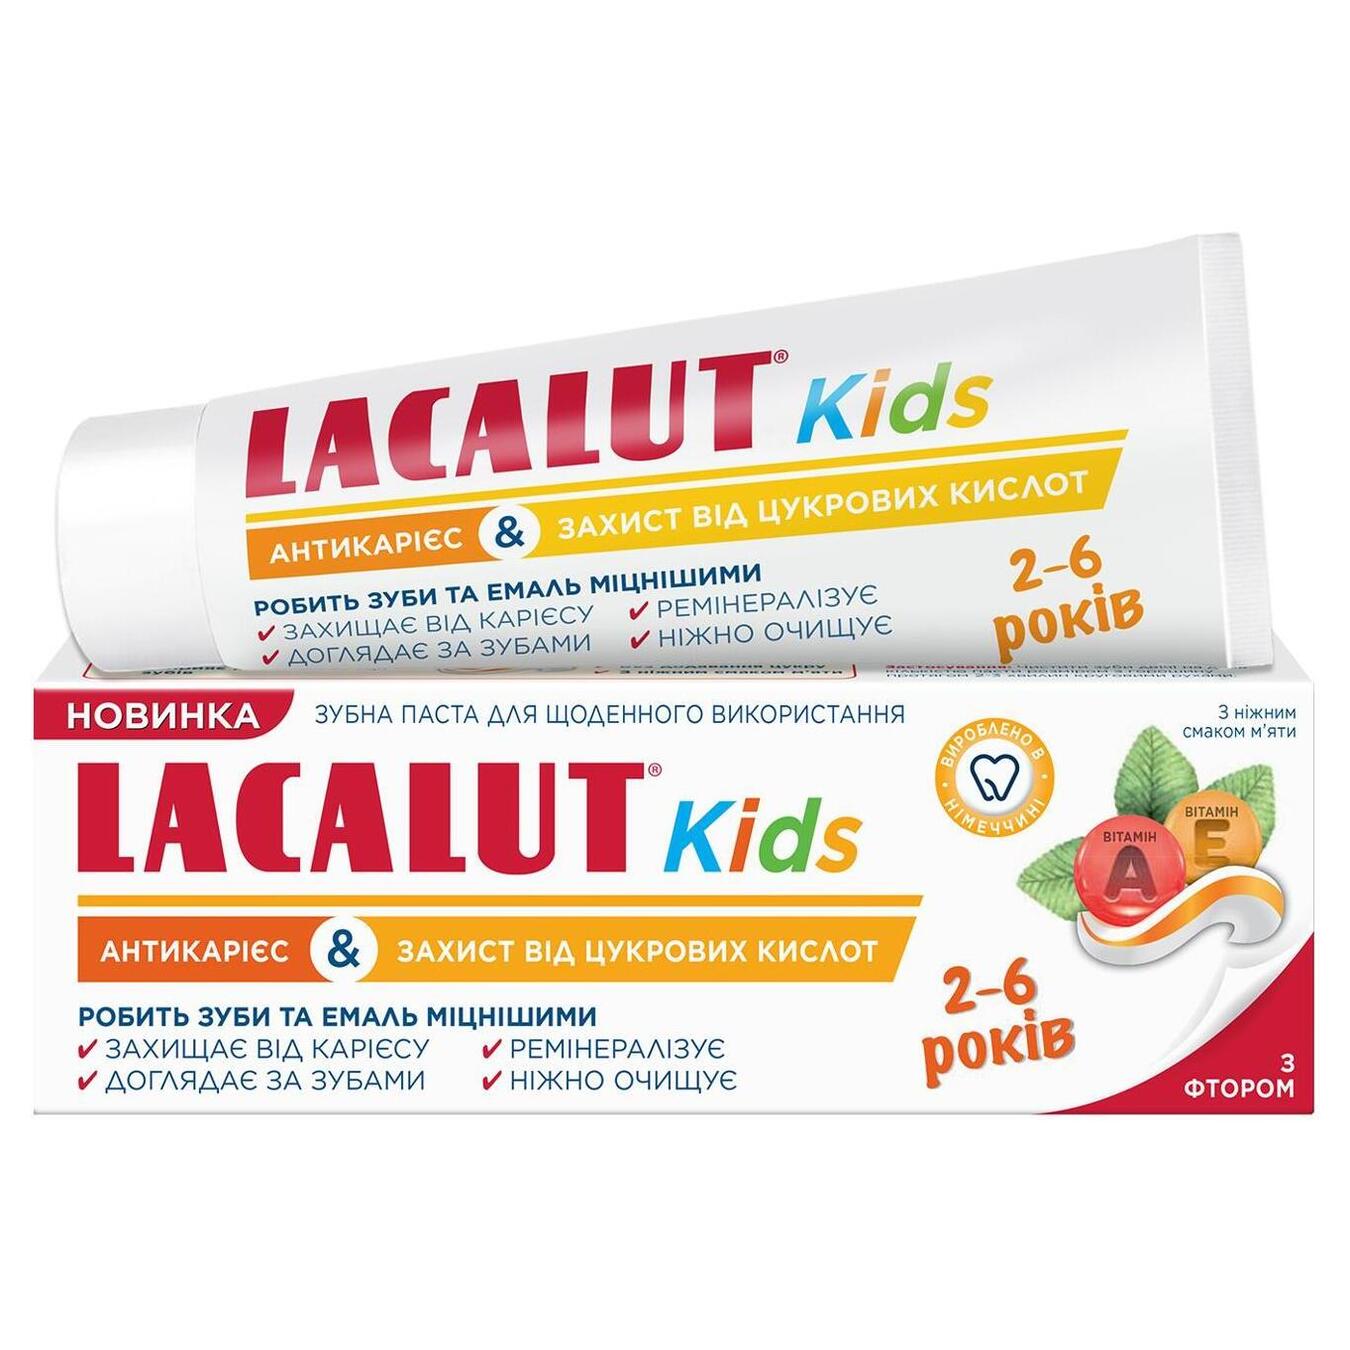 Паста зубна Lacalut Kids антикарієс і захист від цукрових кислот 55мл